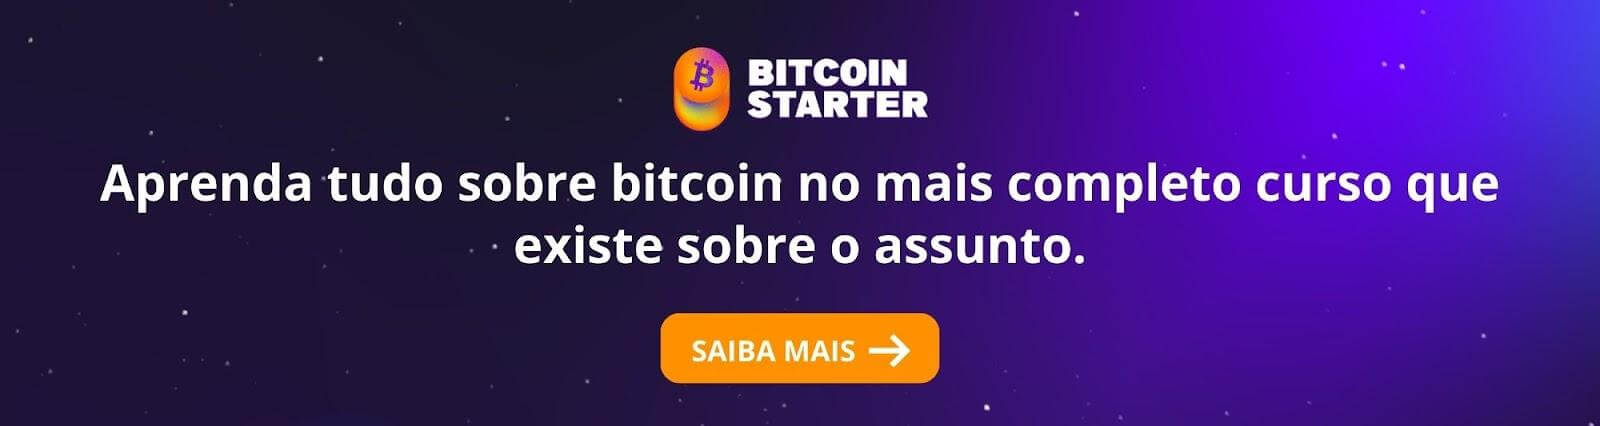 Banner do Bitcoin Starter (Curso sobre Bitcoin)